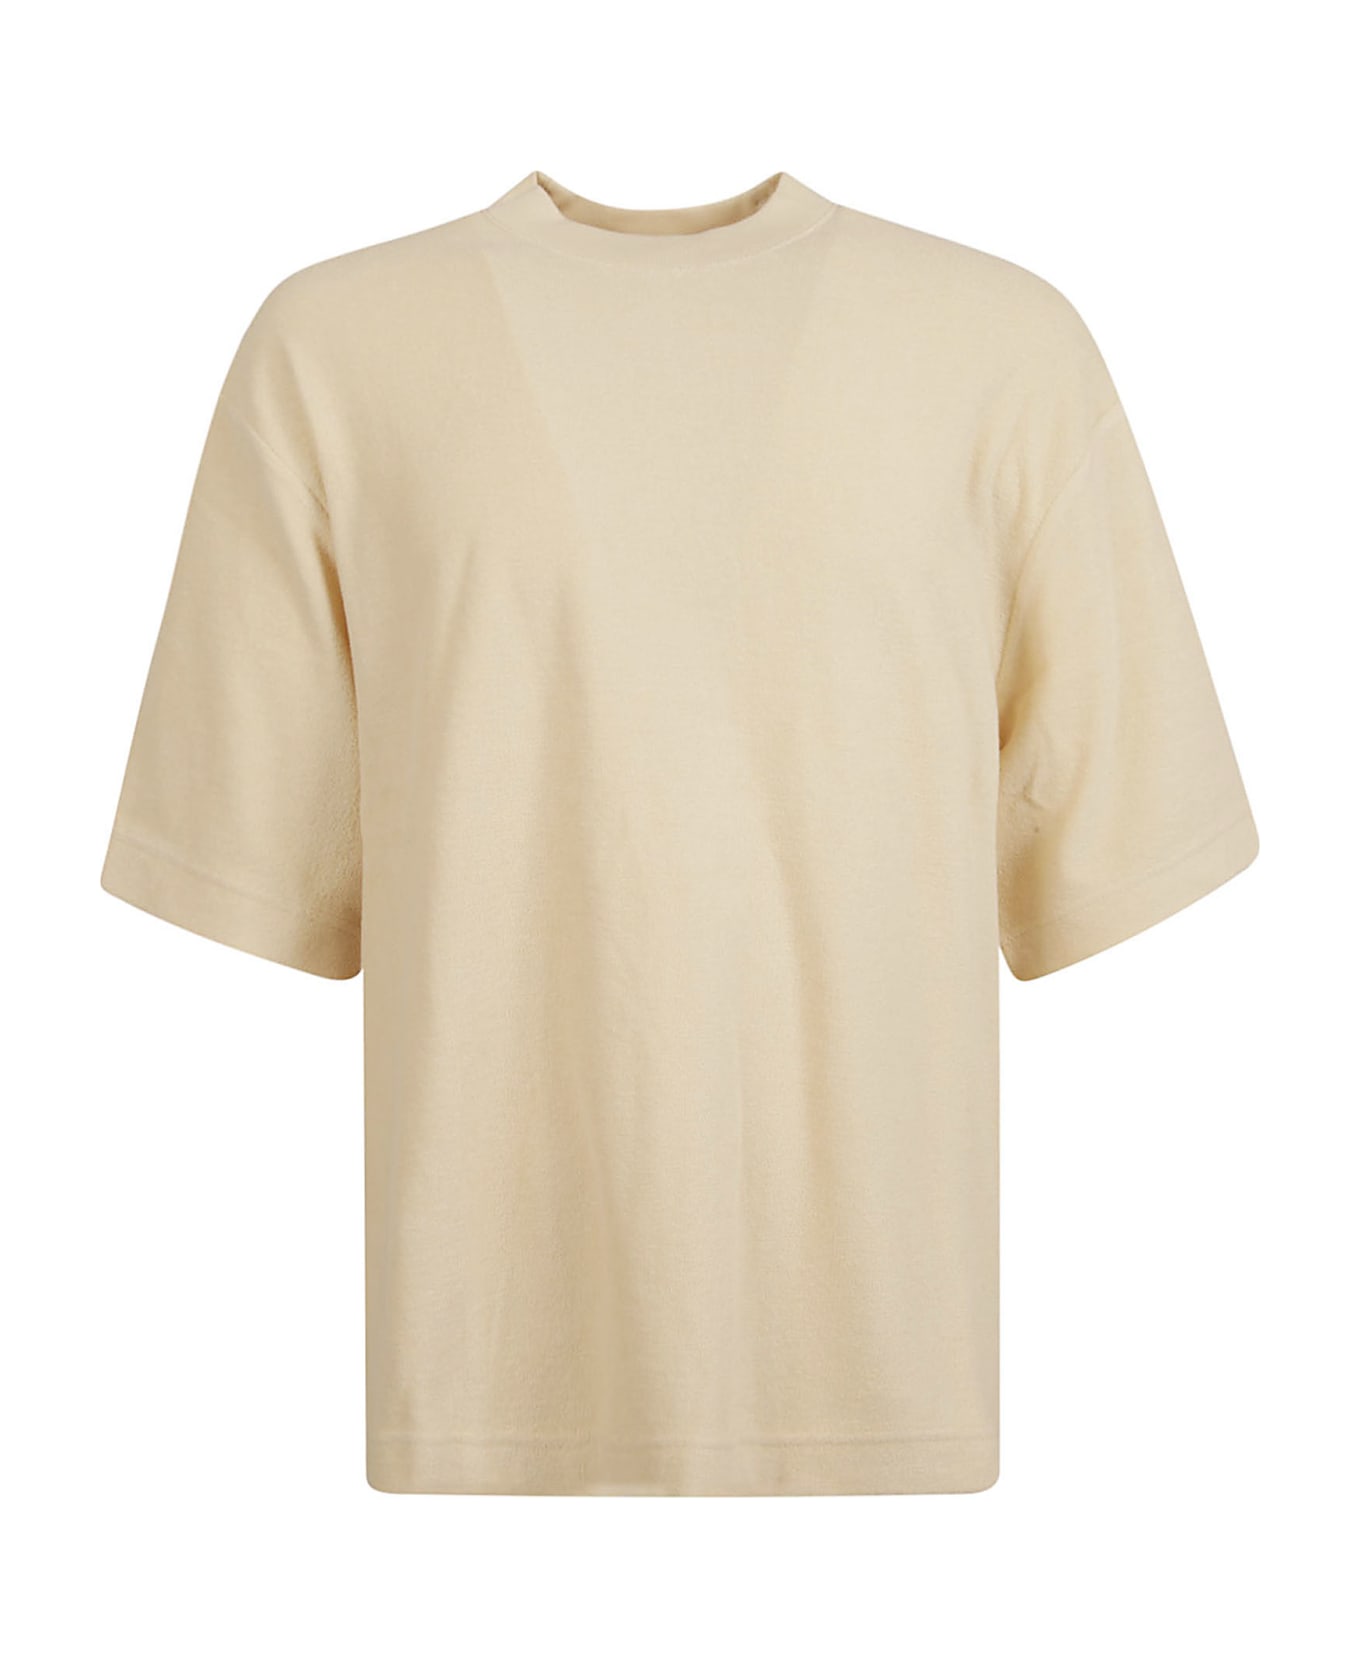 Burberry Round Neck Classic T-shirt - Calico